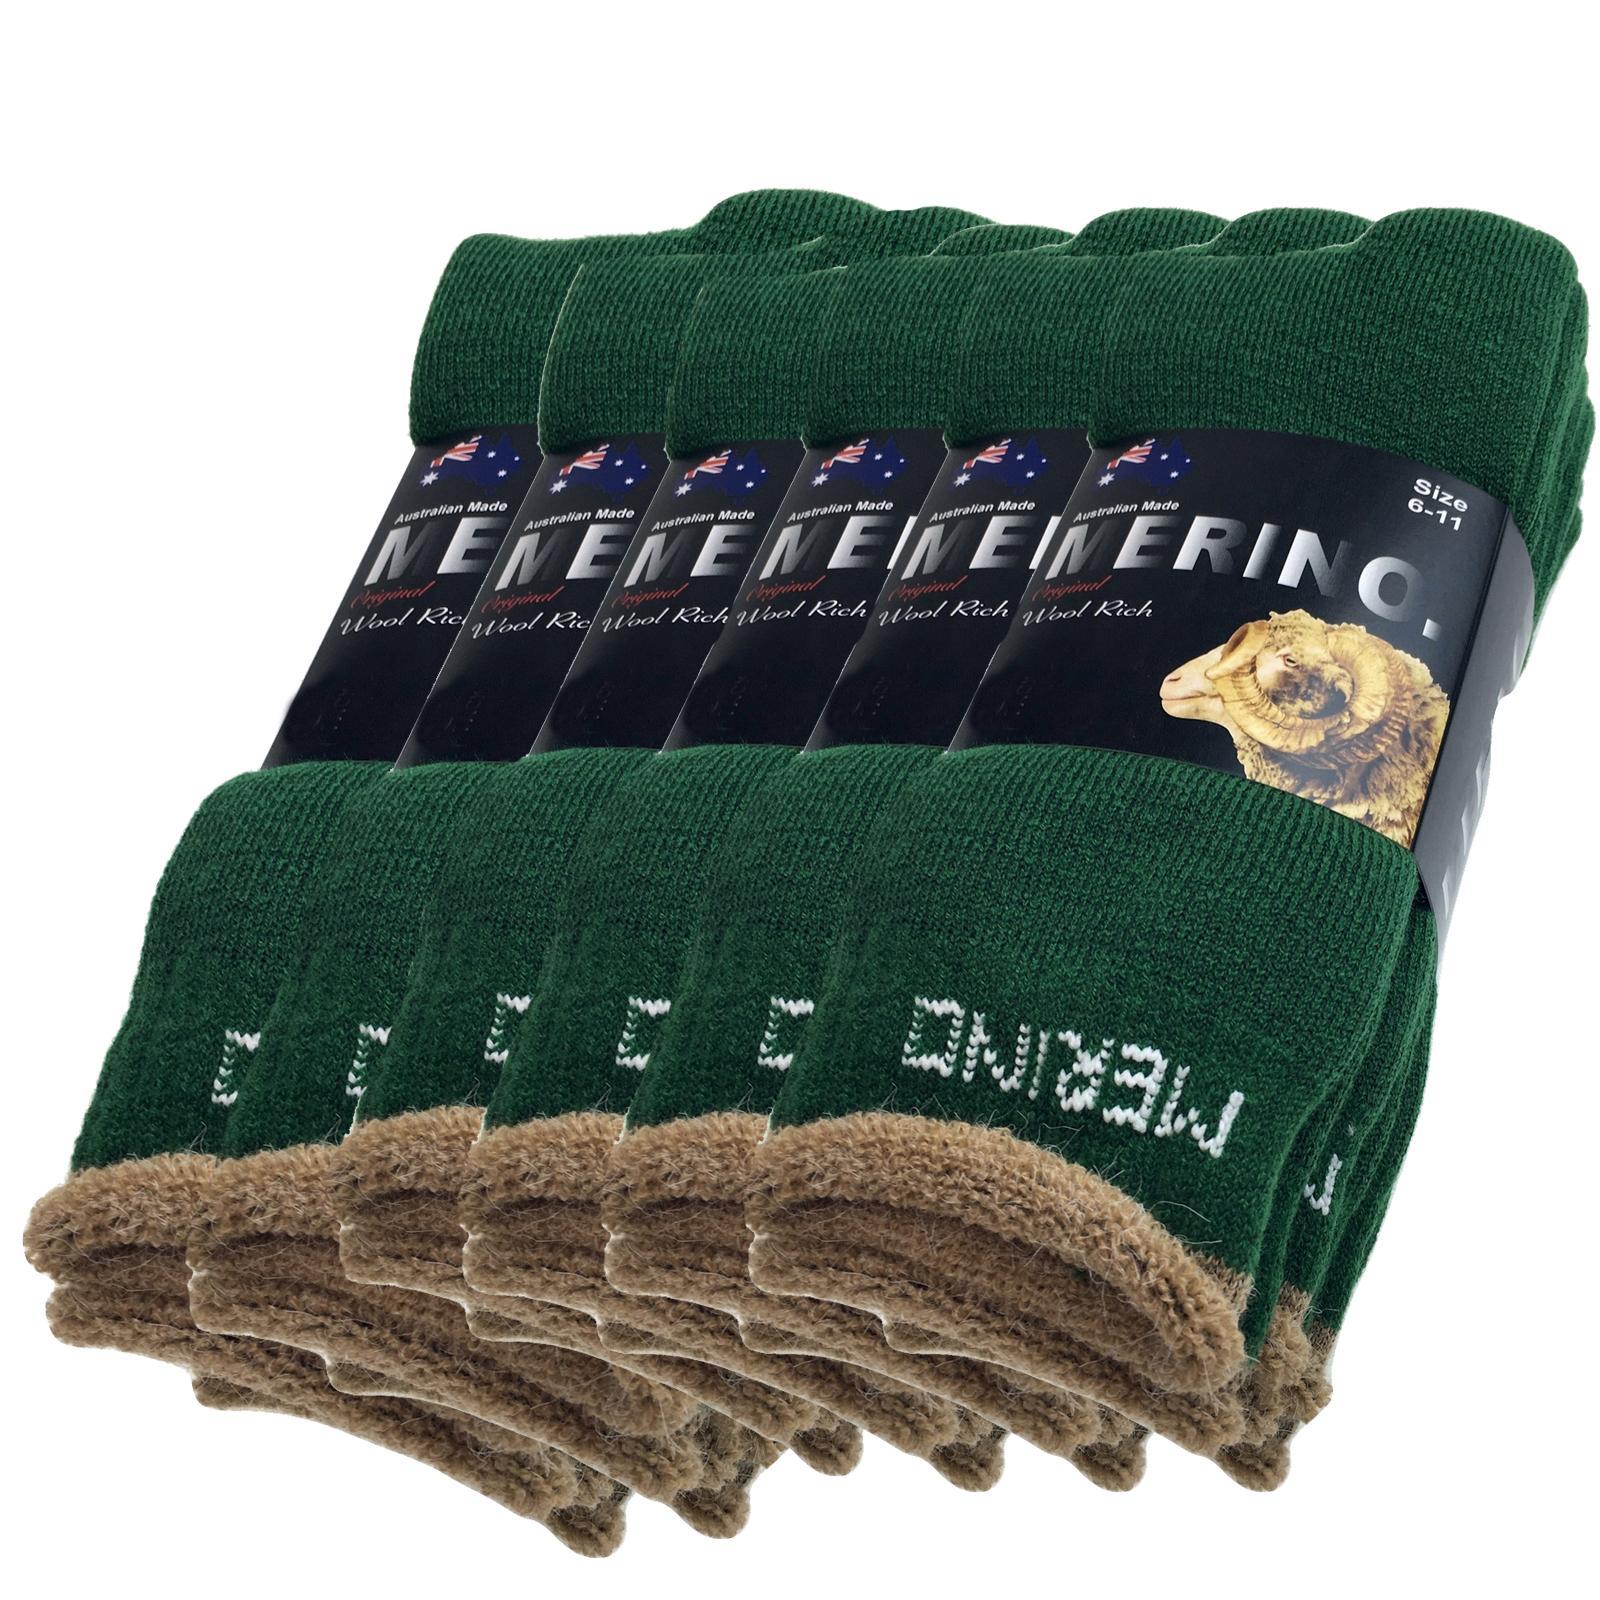 6 Pairs MERINO WOOL SOCKS Mens Heavy Duty Premium Thick Work Socks Cushion BULK - Green - 11-14